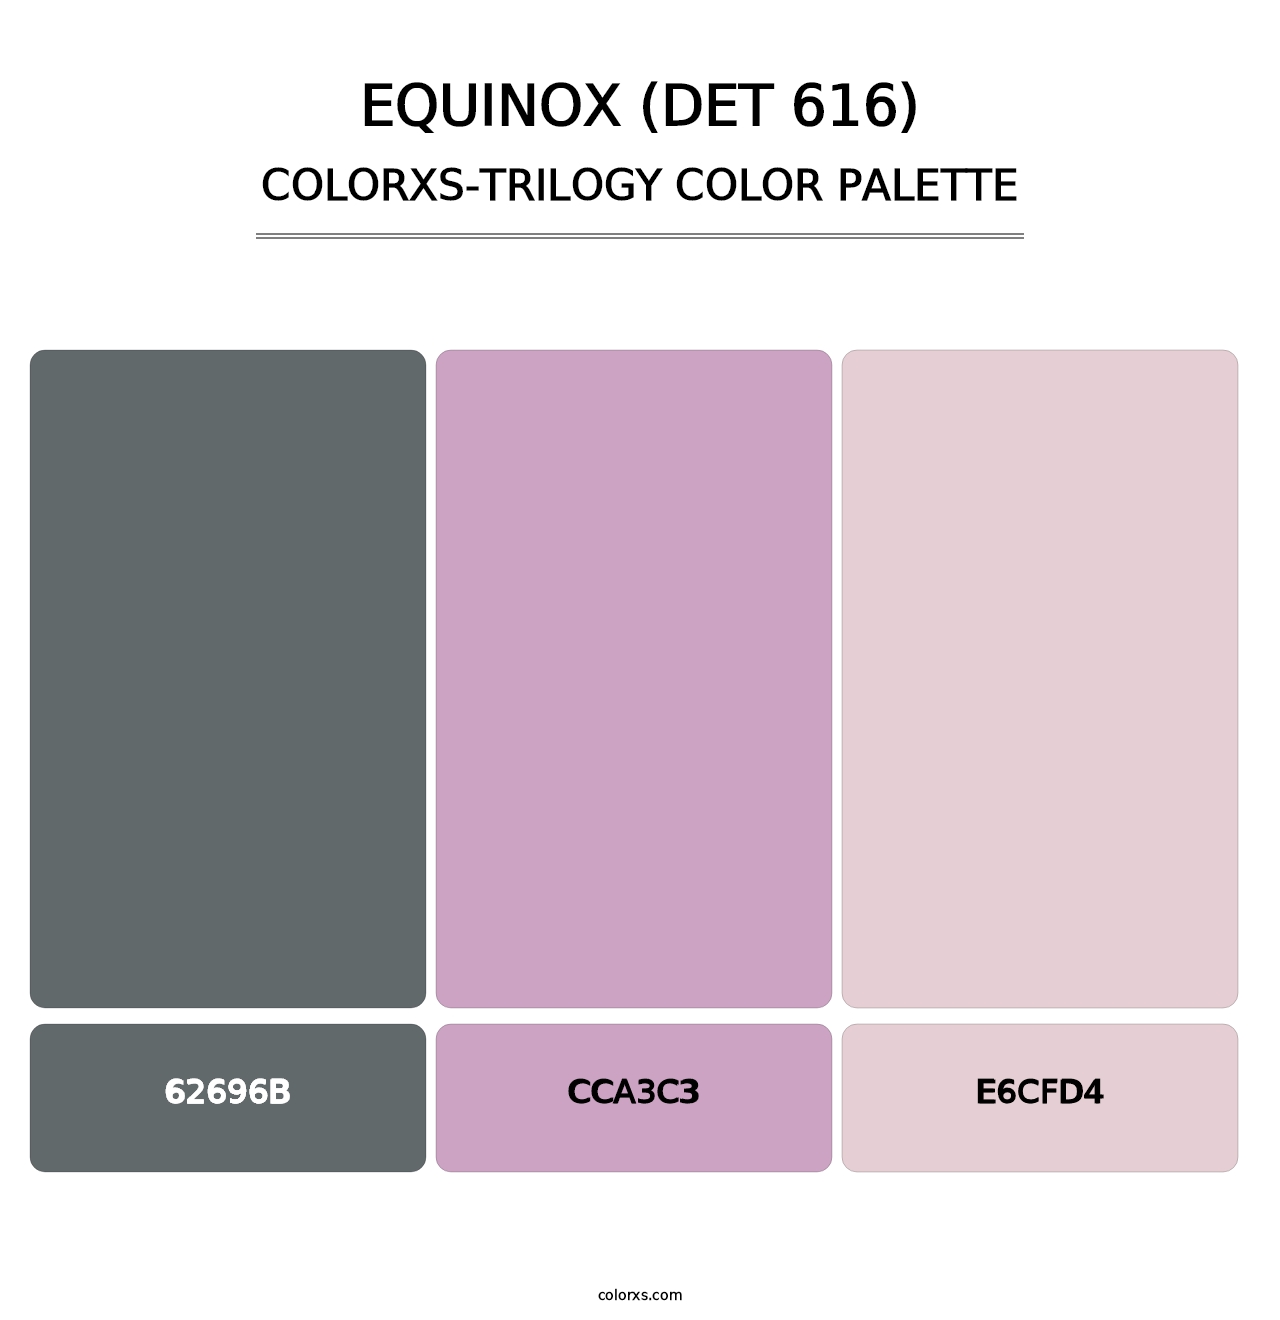 Equinox (DET 616) - Colorxs Trilogy Palette